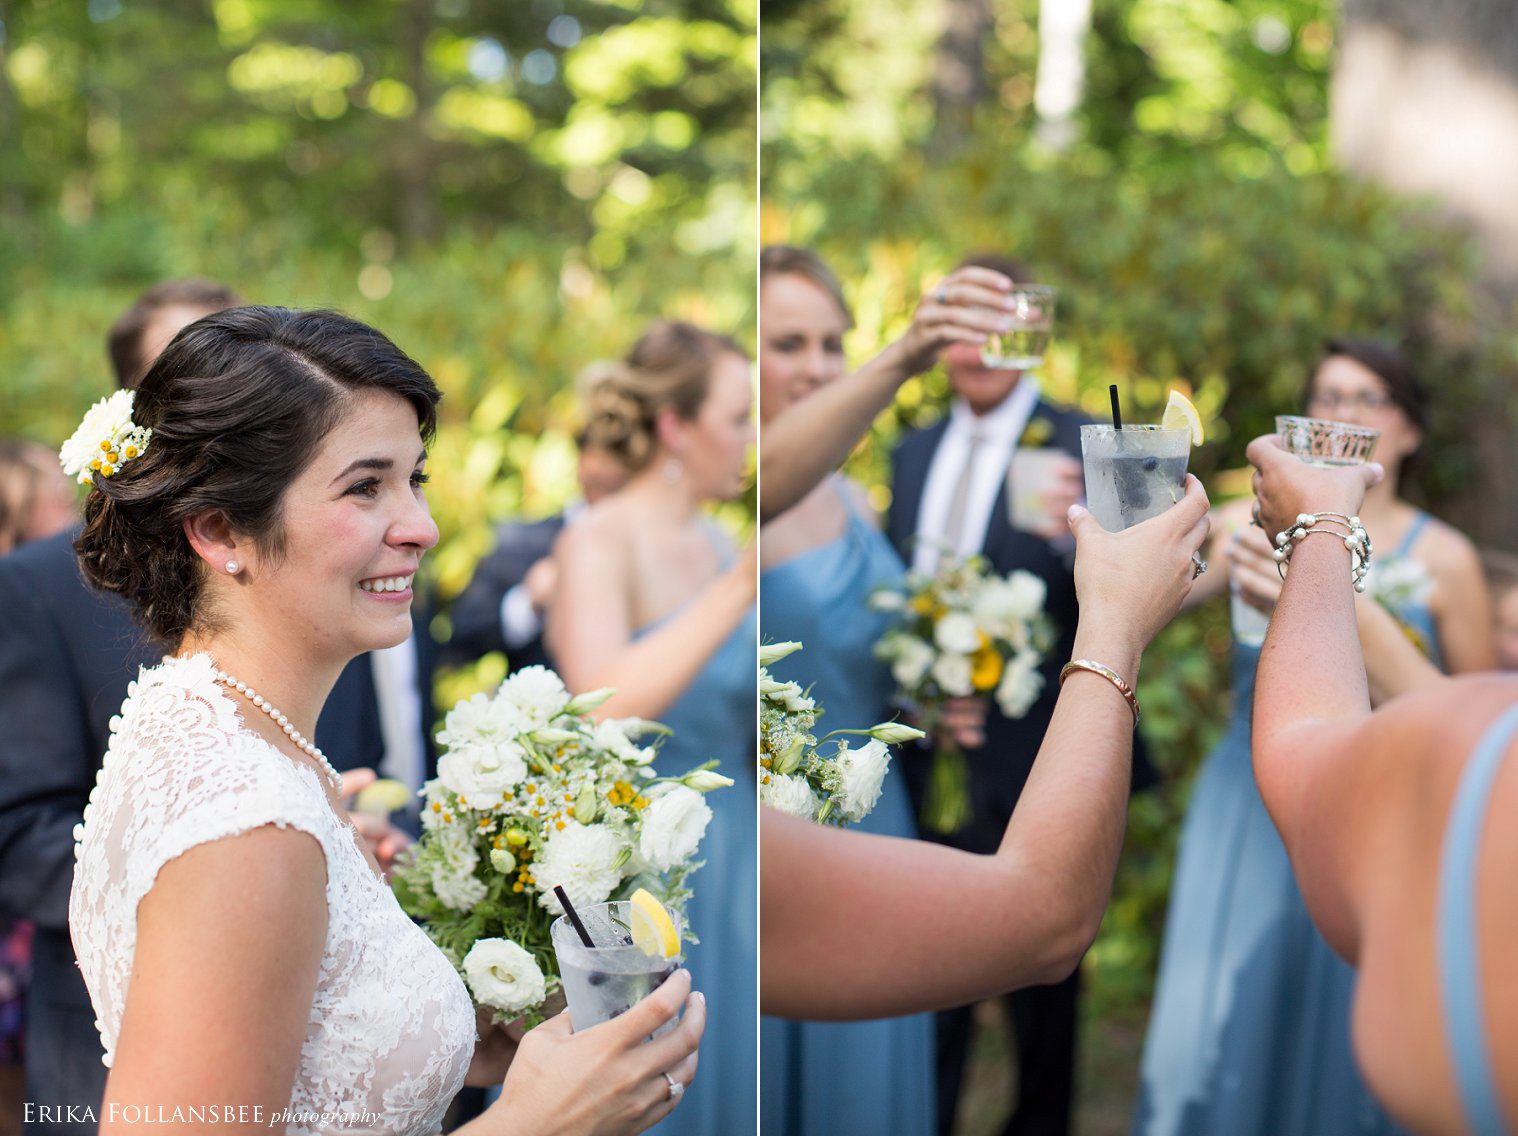 Outdoor summer garden wedding in New Hampshire | The Fells